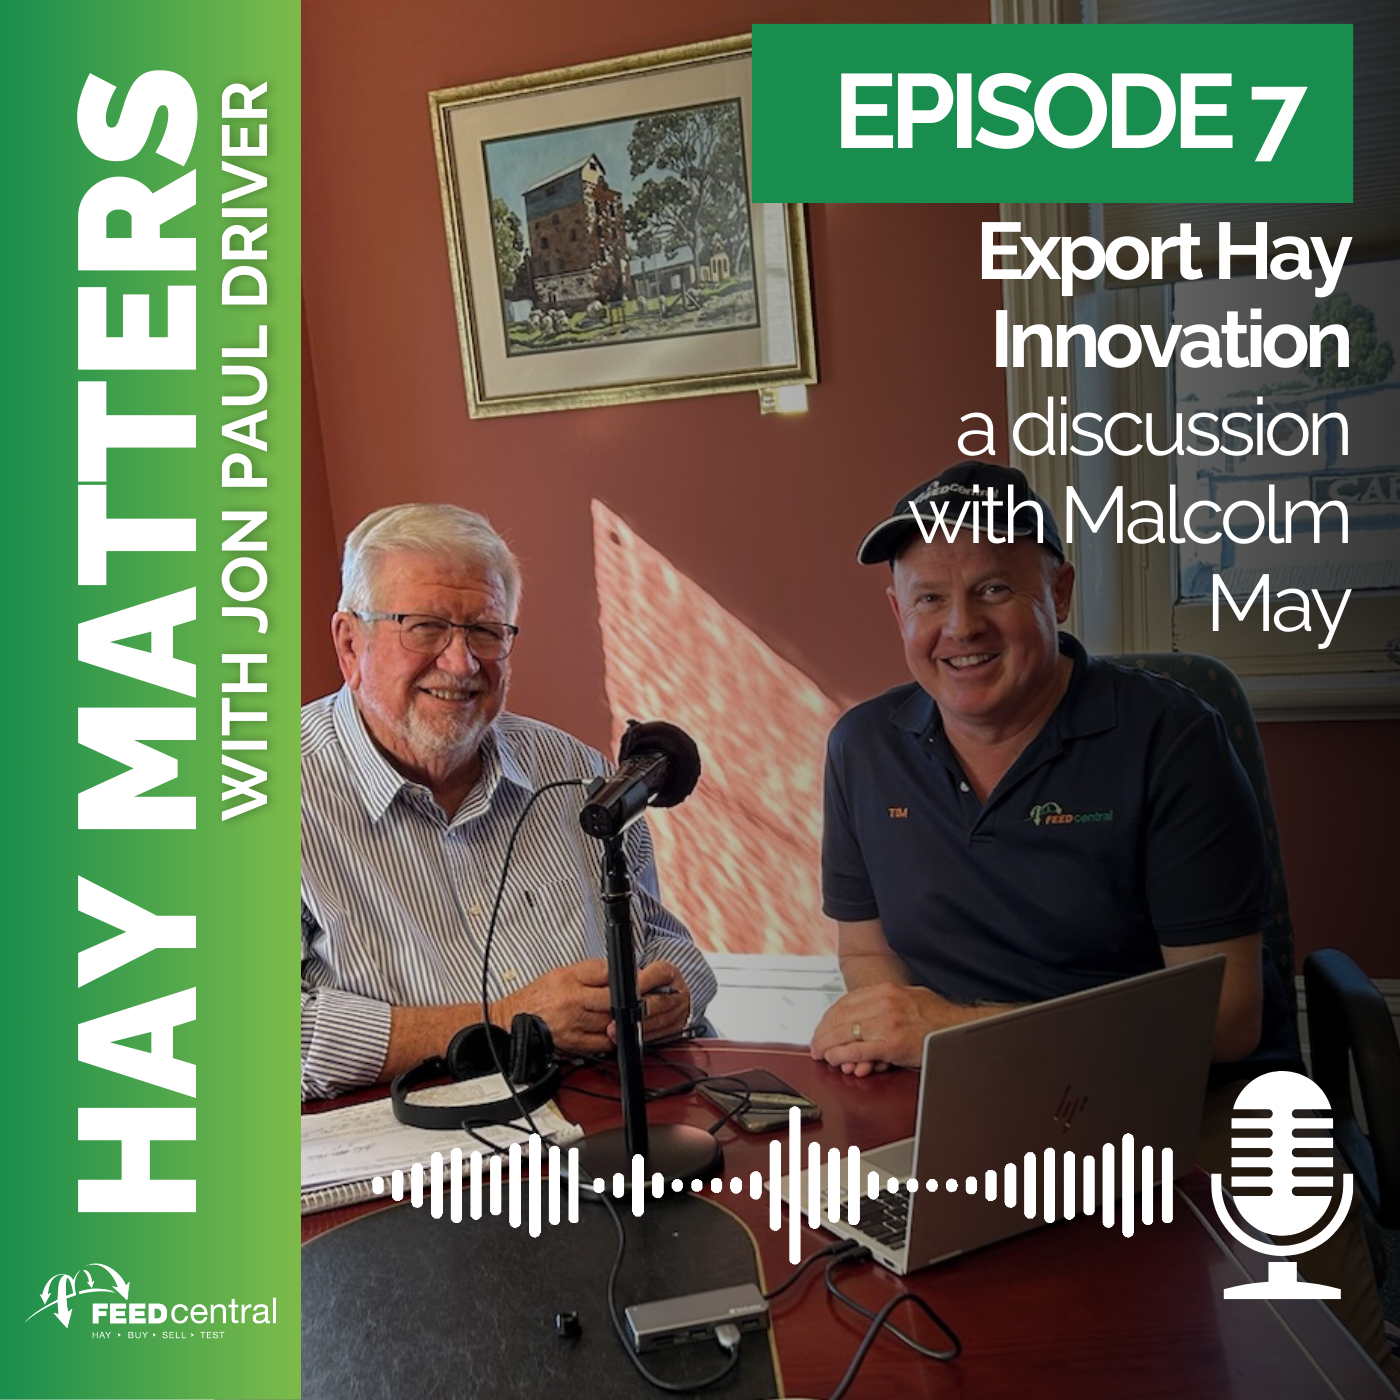 Malcolm May talks Export Hay Innovation